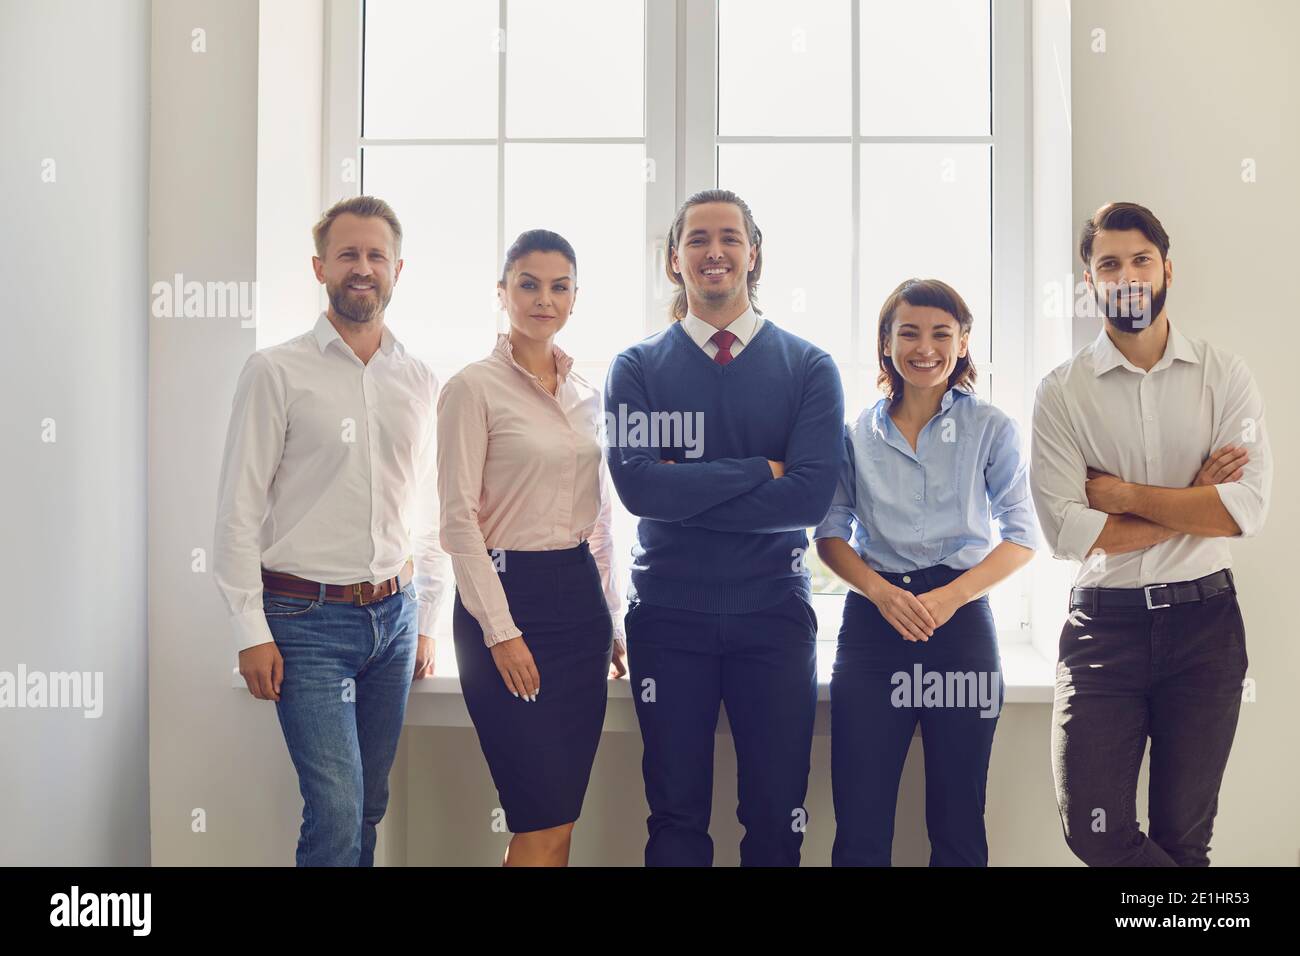 Porträt eines erfolgreichen kreativen Business-Teams, das auf die Kamera schaut und am Fenster lächelt. Stockfoto